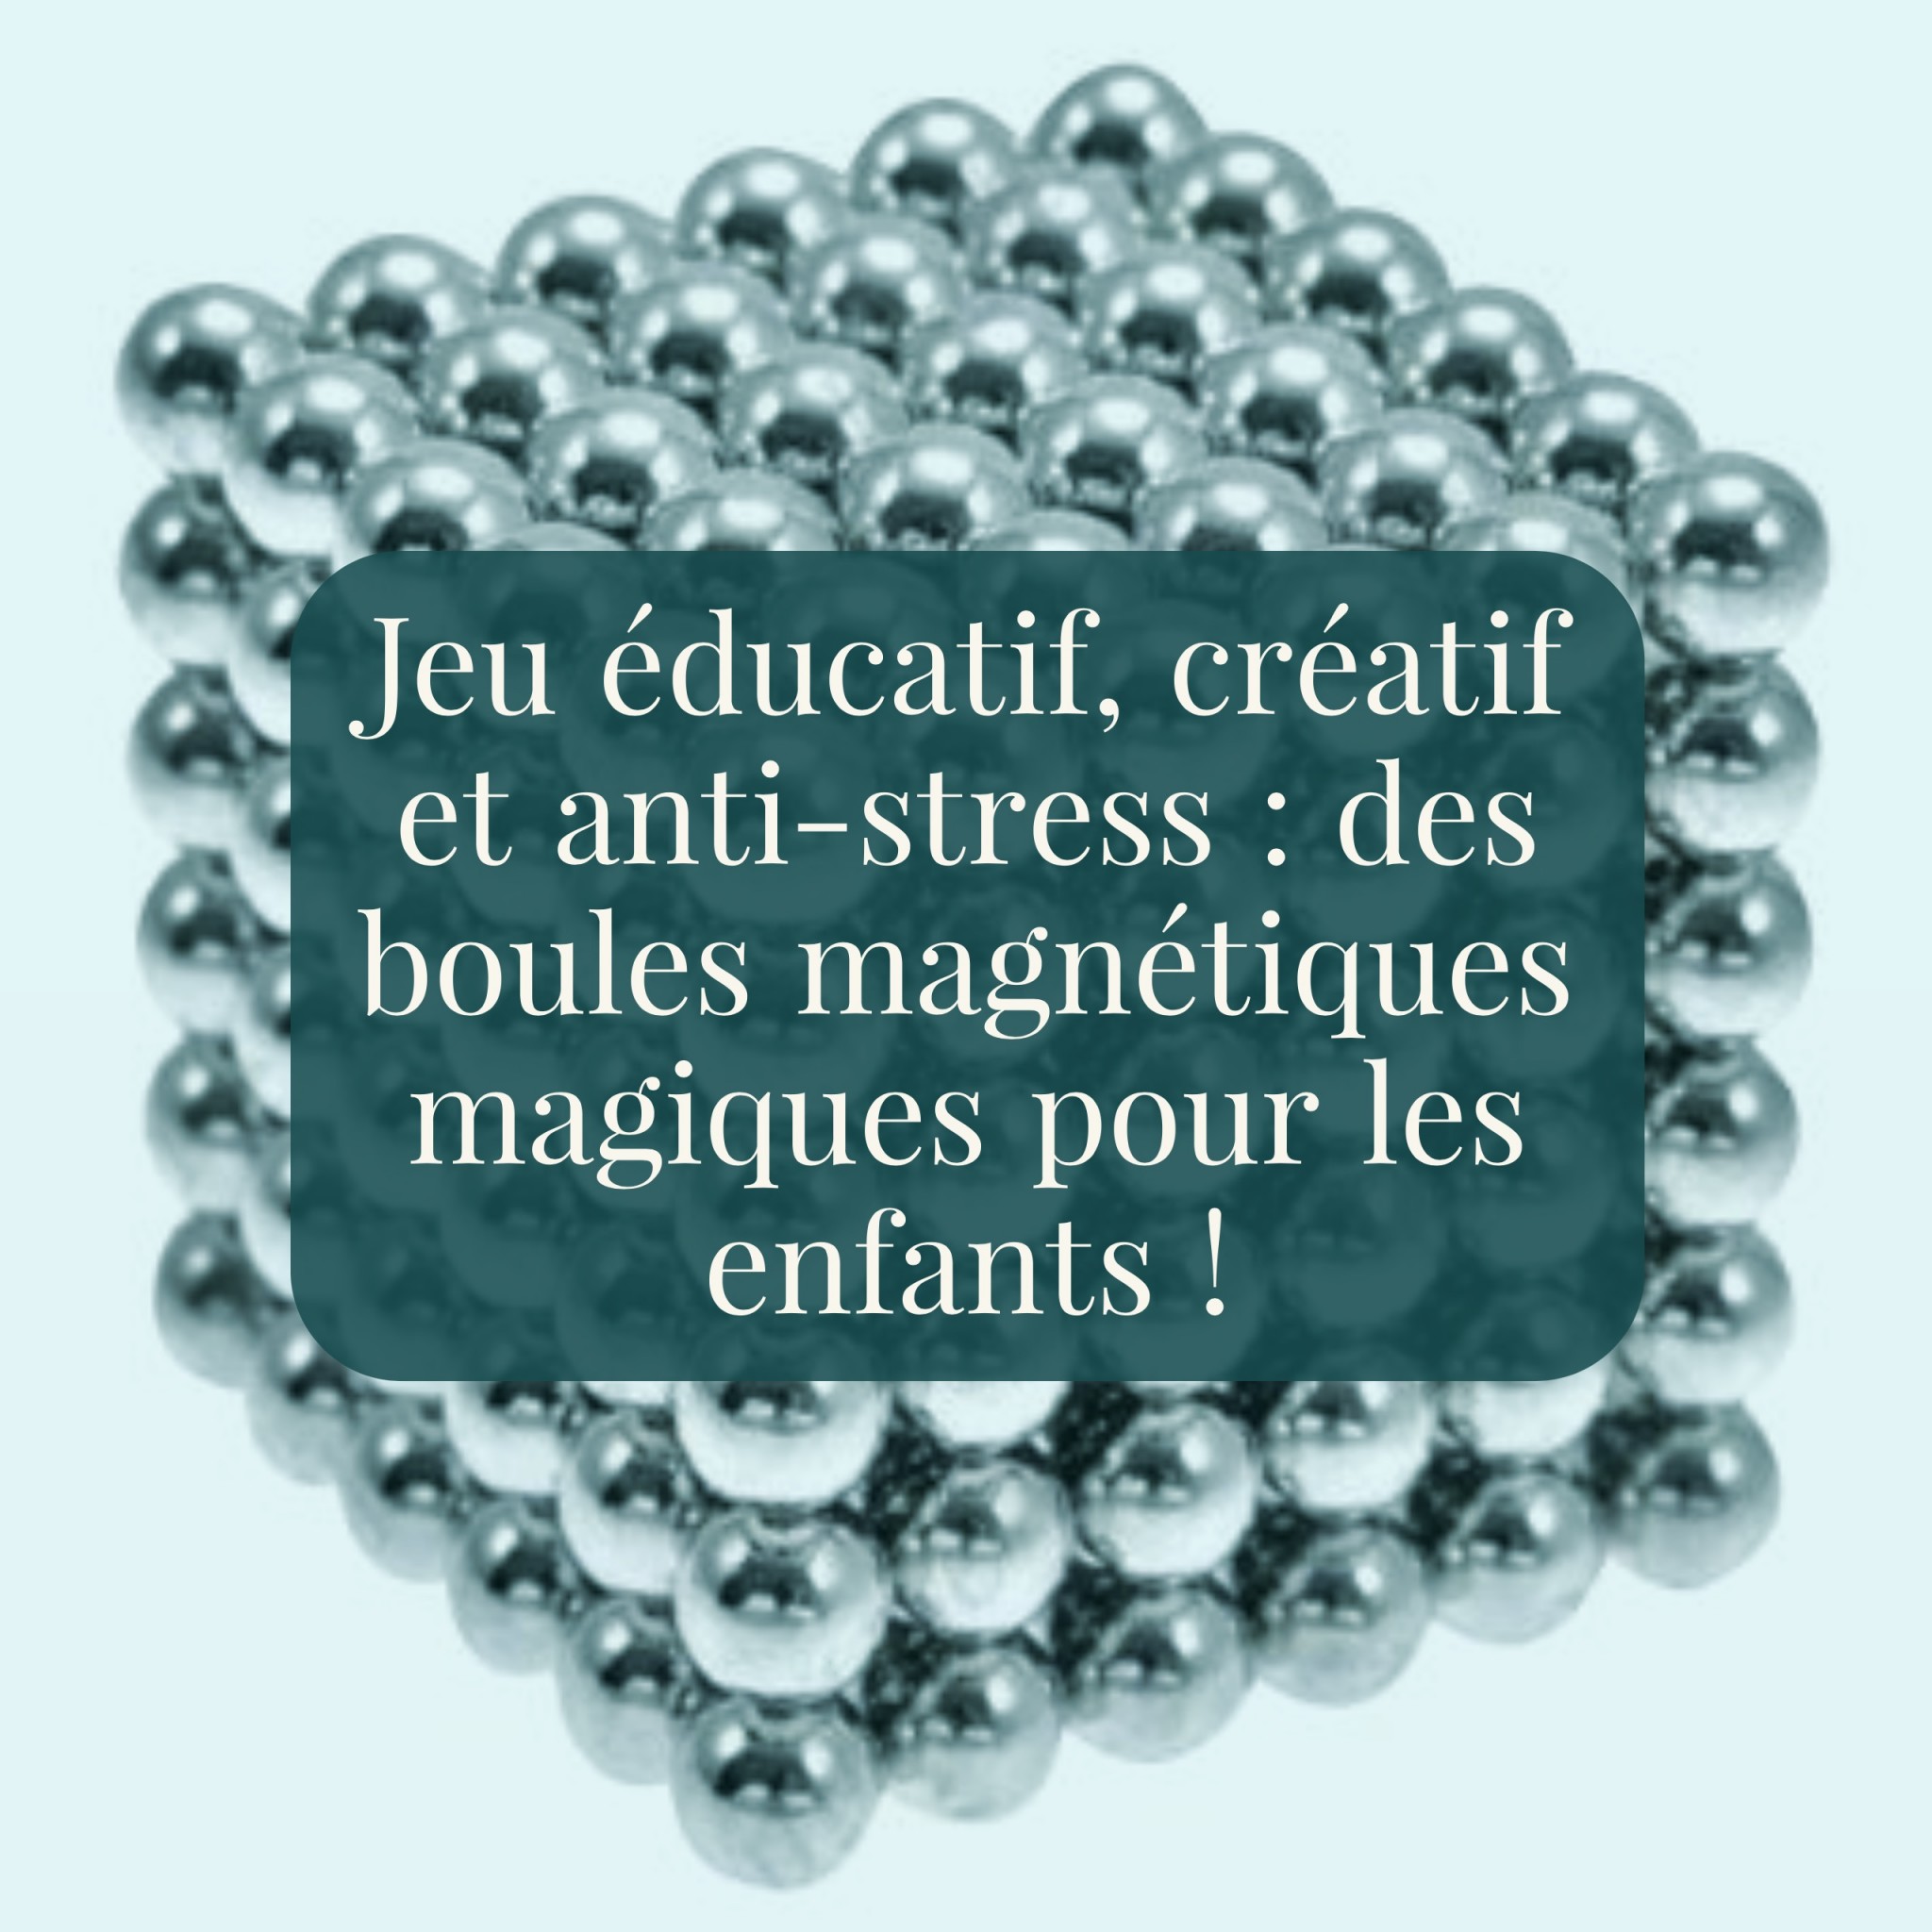 Jeu éducatif, créatif et anti-stress : des boules magnétiques